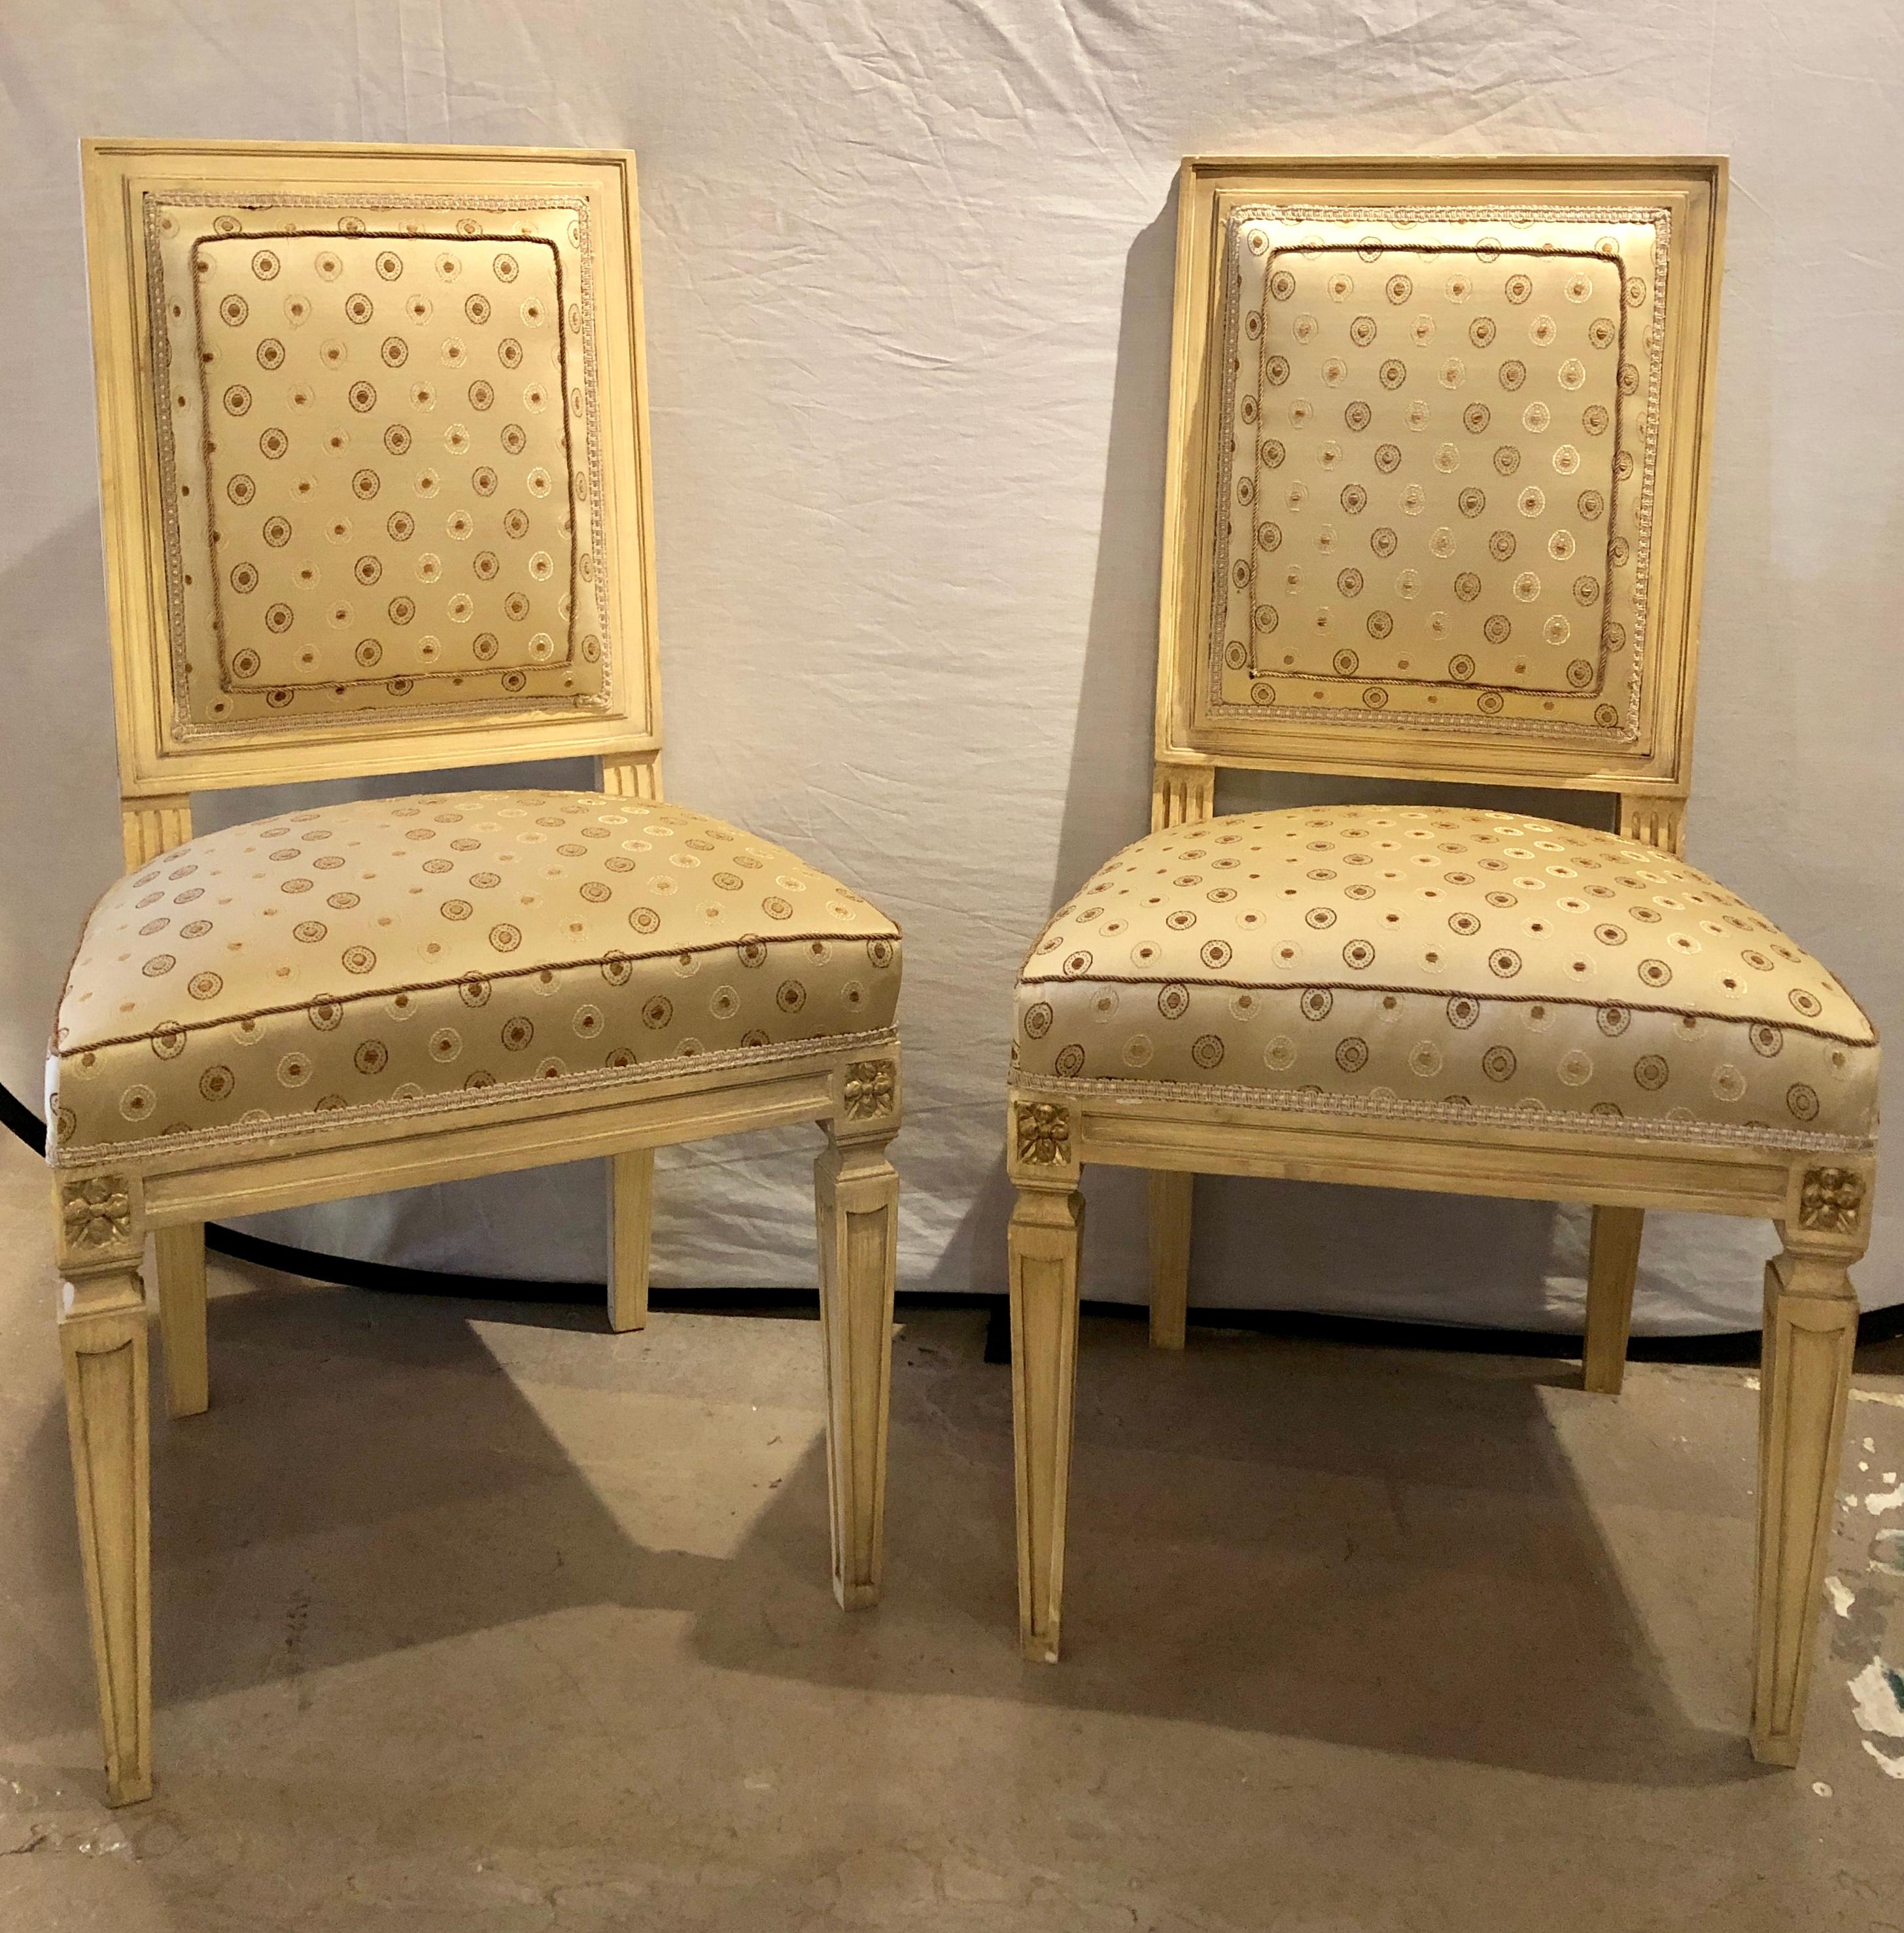 Satz von fünf lackierten und vergoldeten Esszimmerstühlen im Jansen-Stil im Louis XVI-Stil. Jeweils neu gepolstert, mit neuen Federn und Nähten. Das Set mit feinen, schlanken und sauberen Linien in einer leinenweißen Form aus Pergament-Kunstfarbe